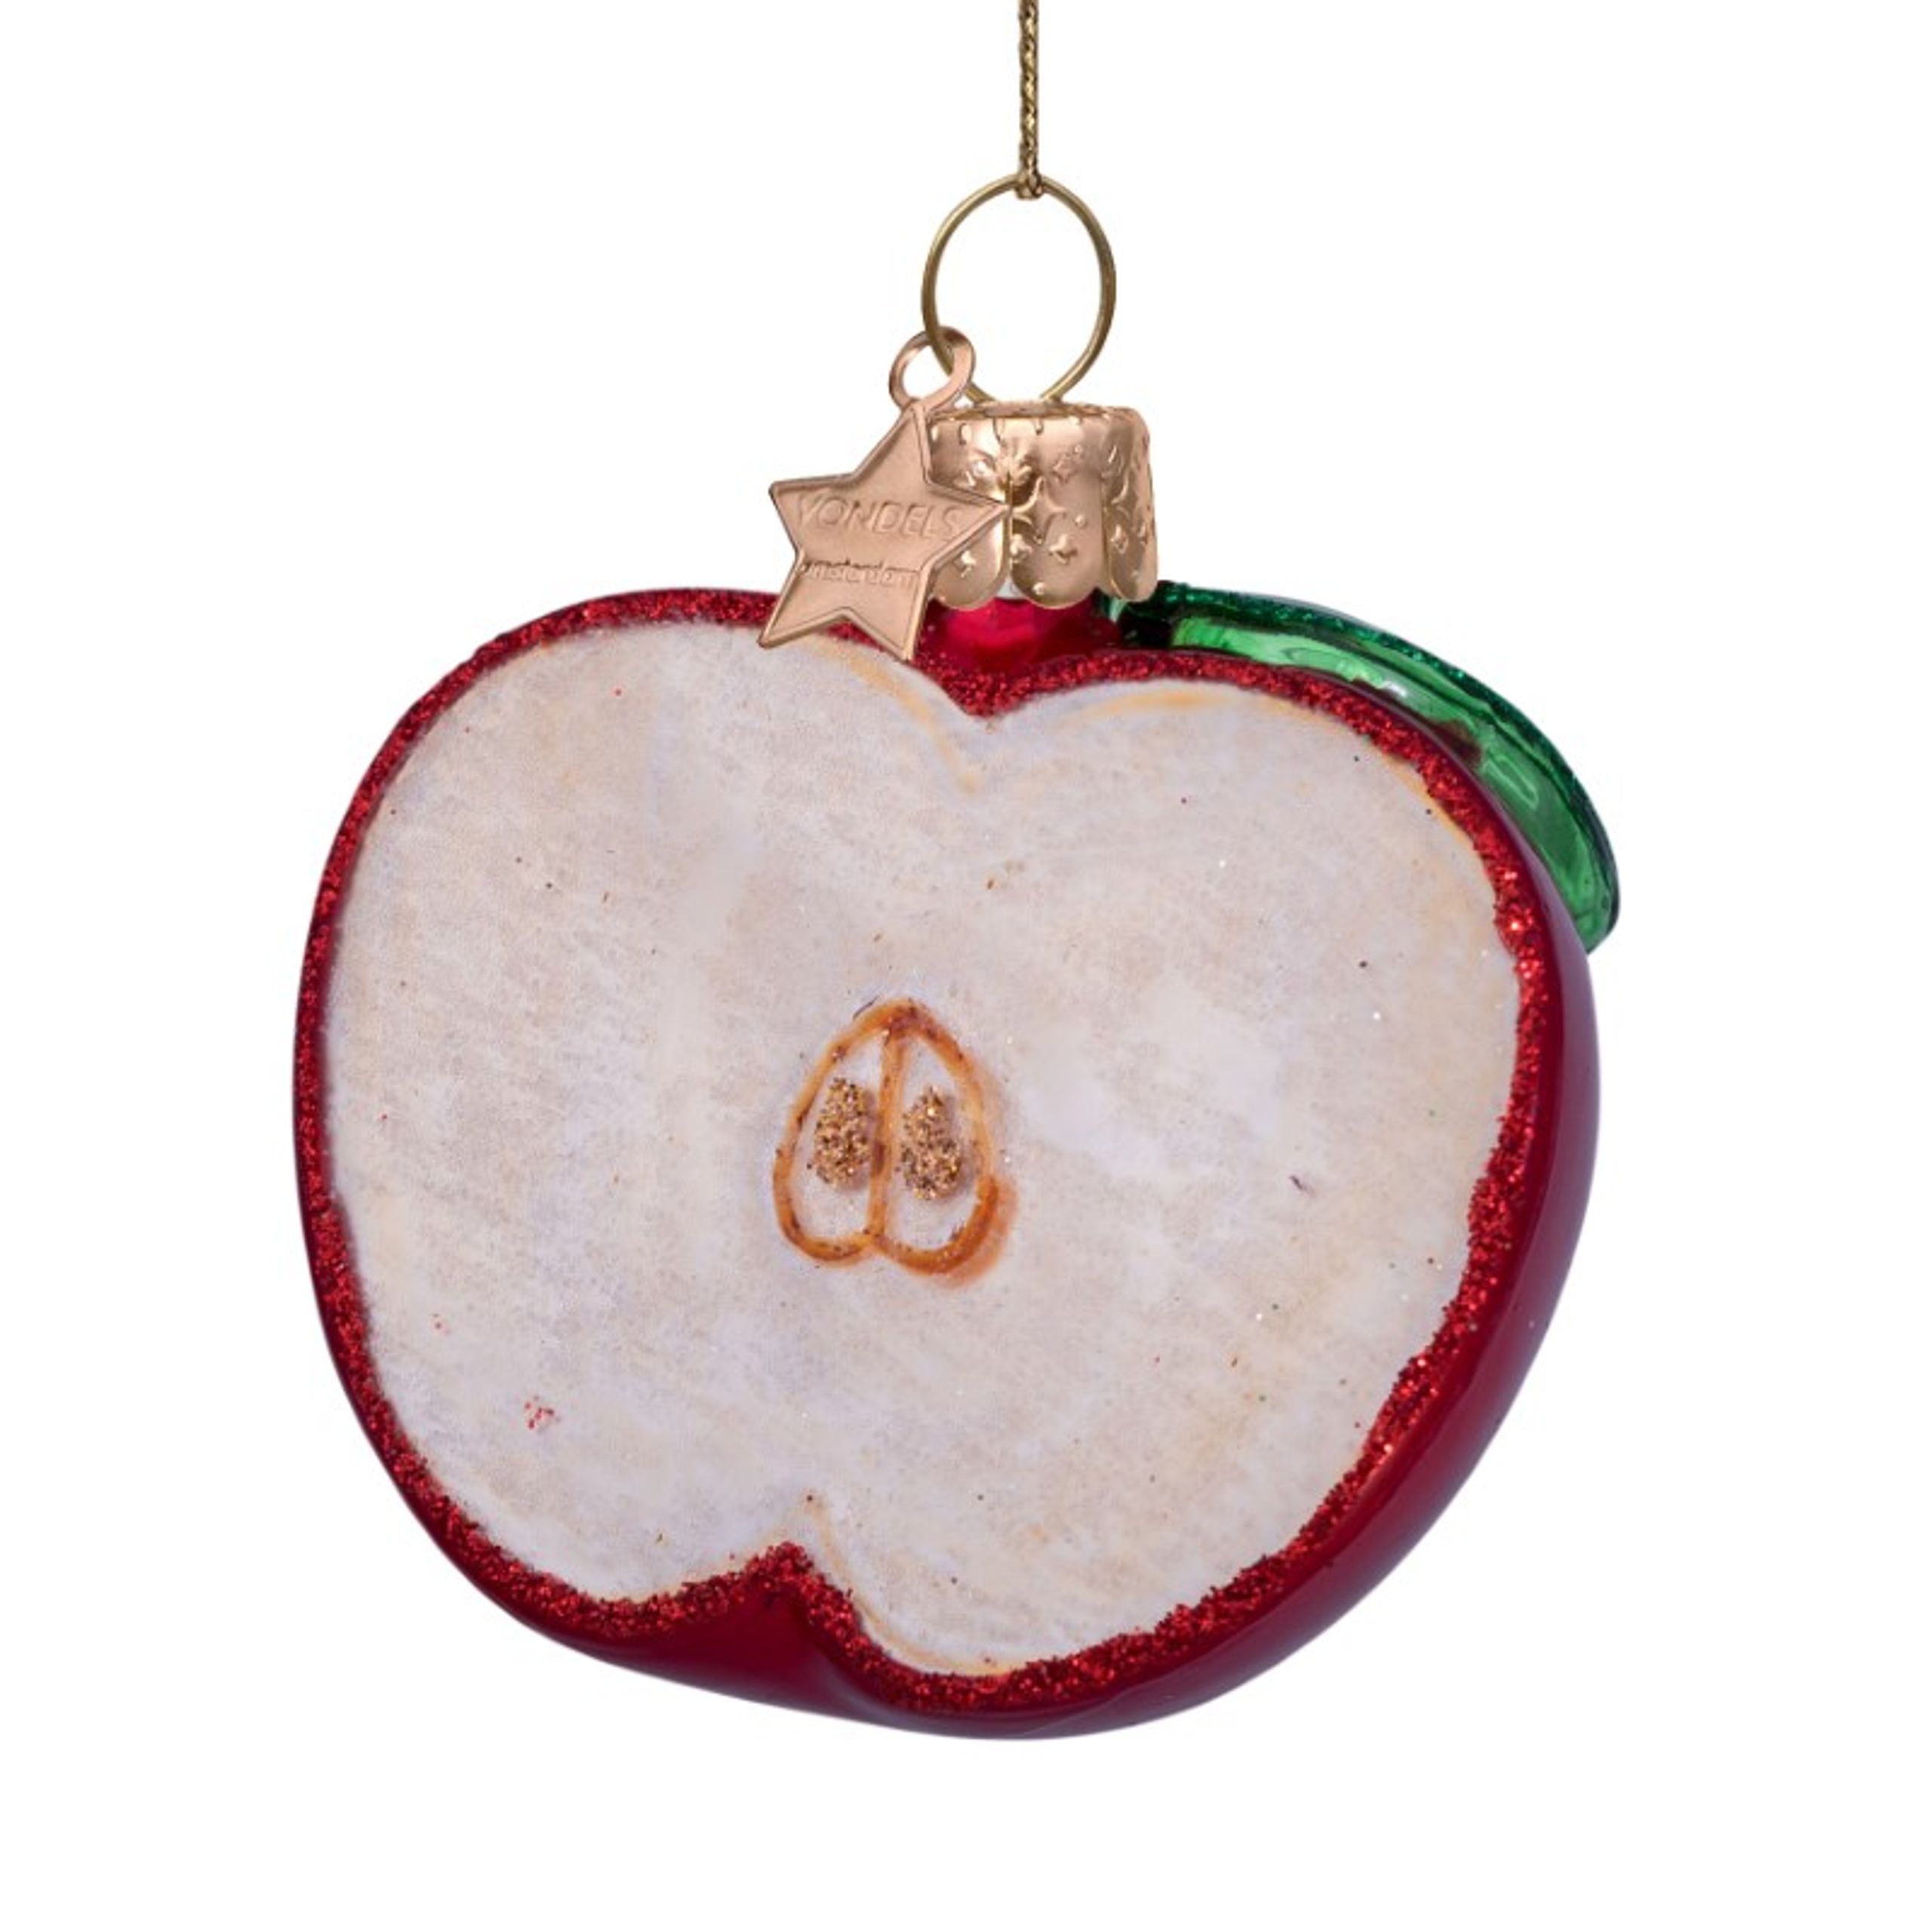 Vondels - Christbaumkugel - Ornament glass red apple - Red